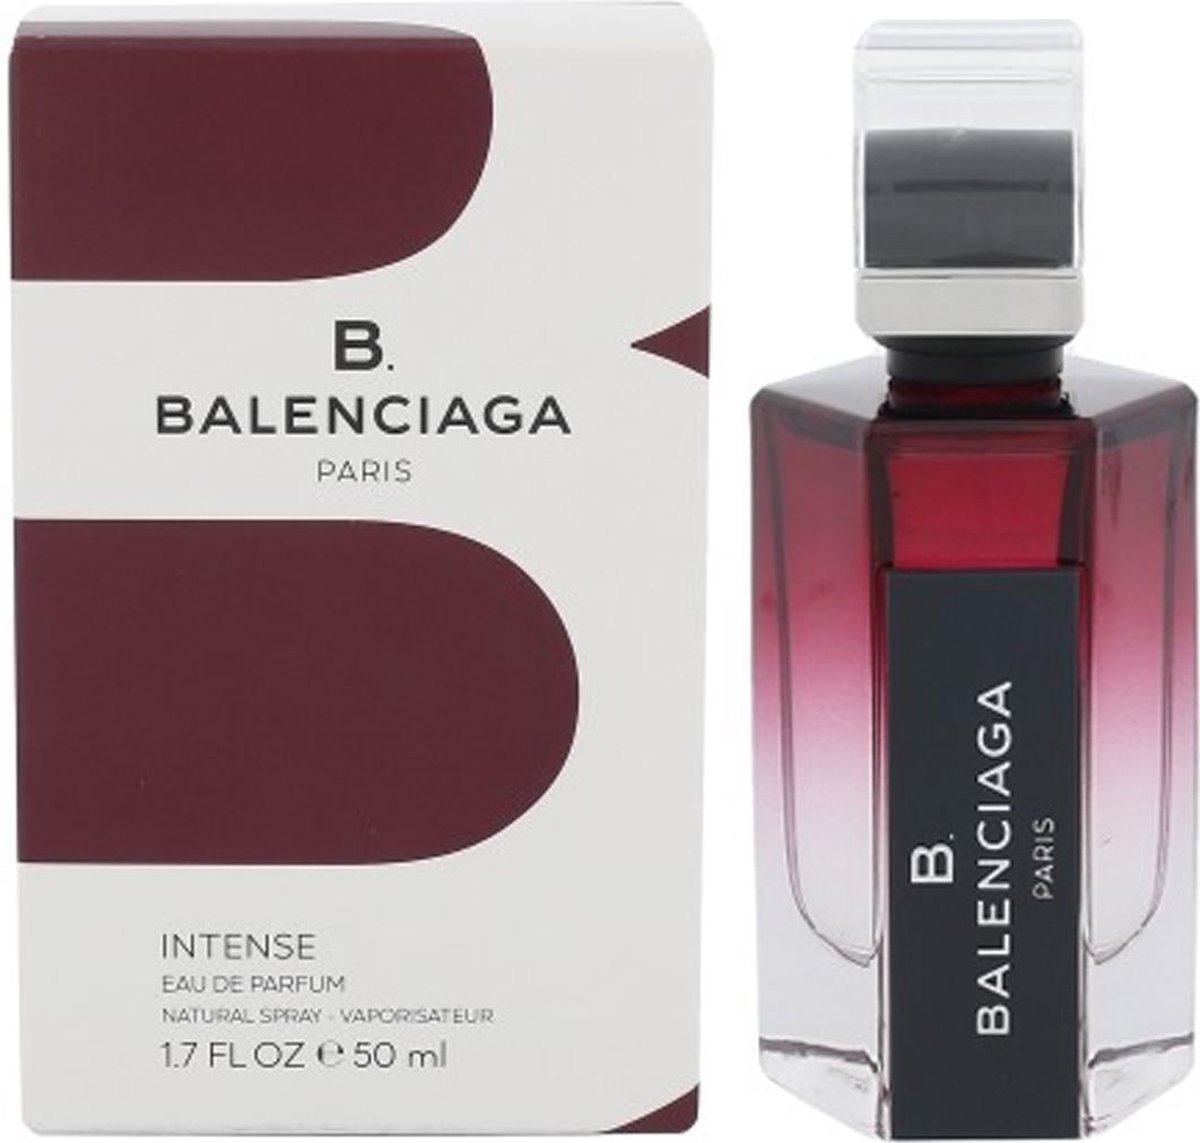 Balenciaga B. Balenciaga Intense Eau de Parfum 50ml Spray | bol.com